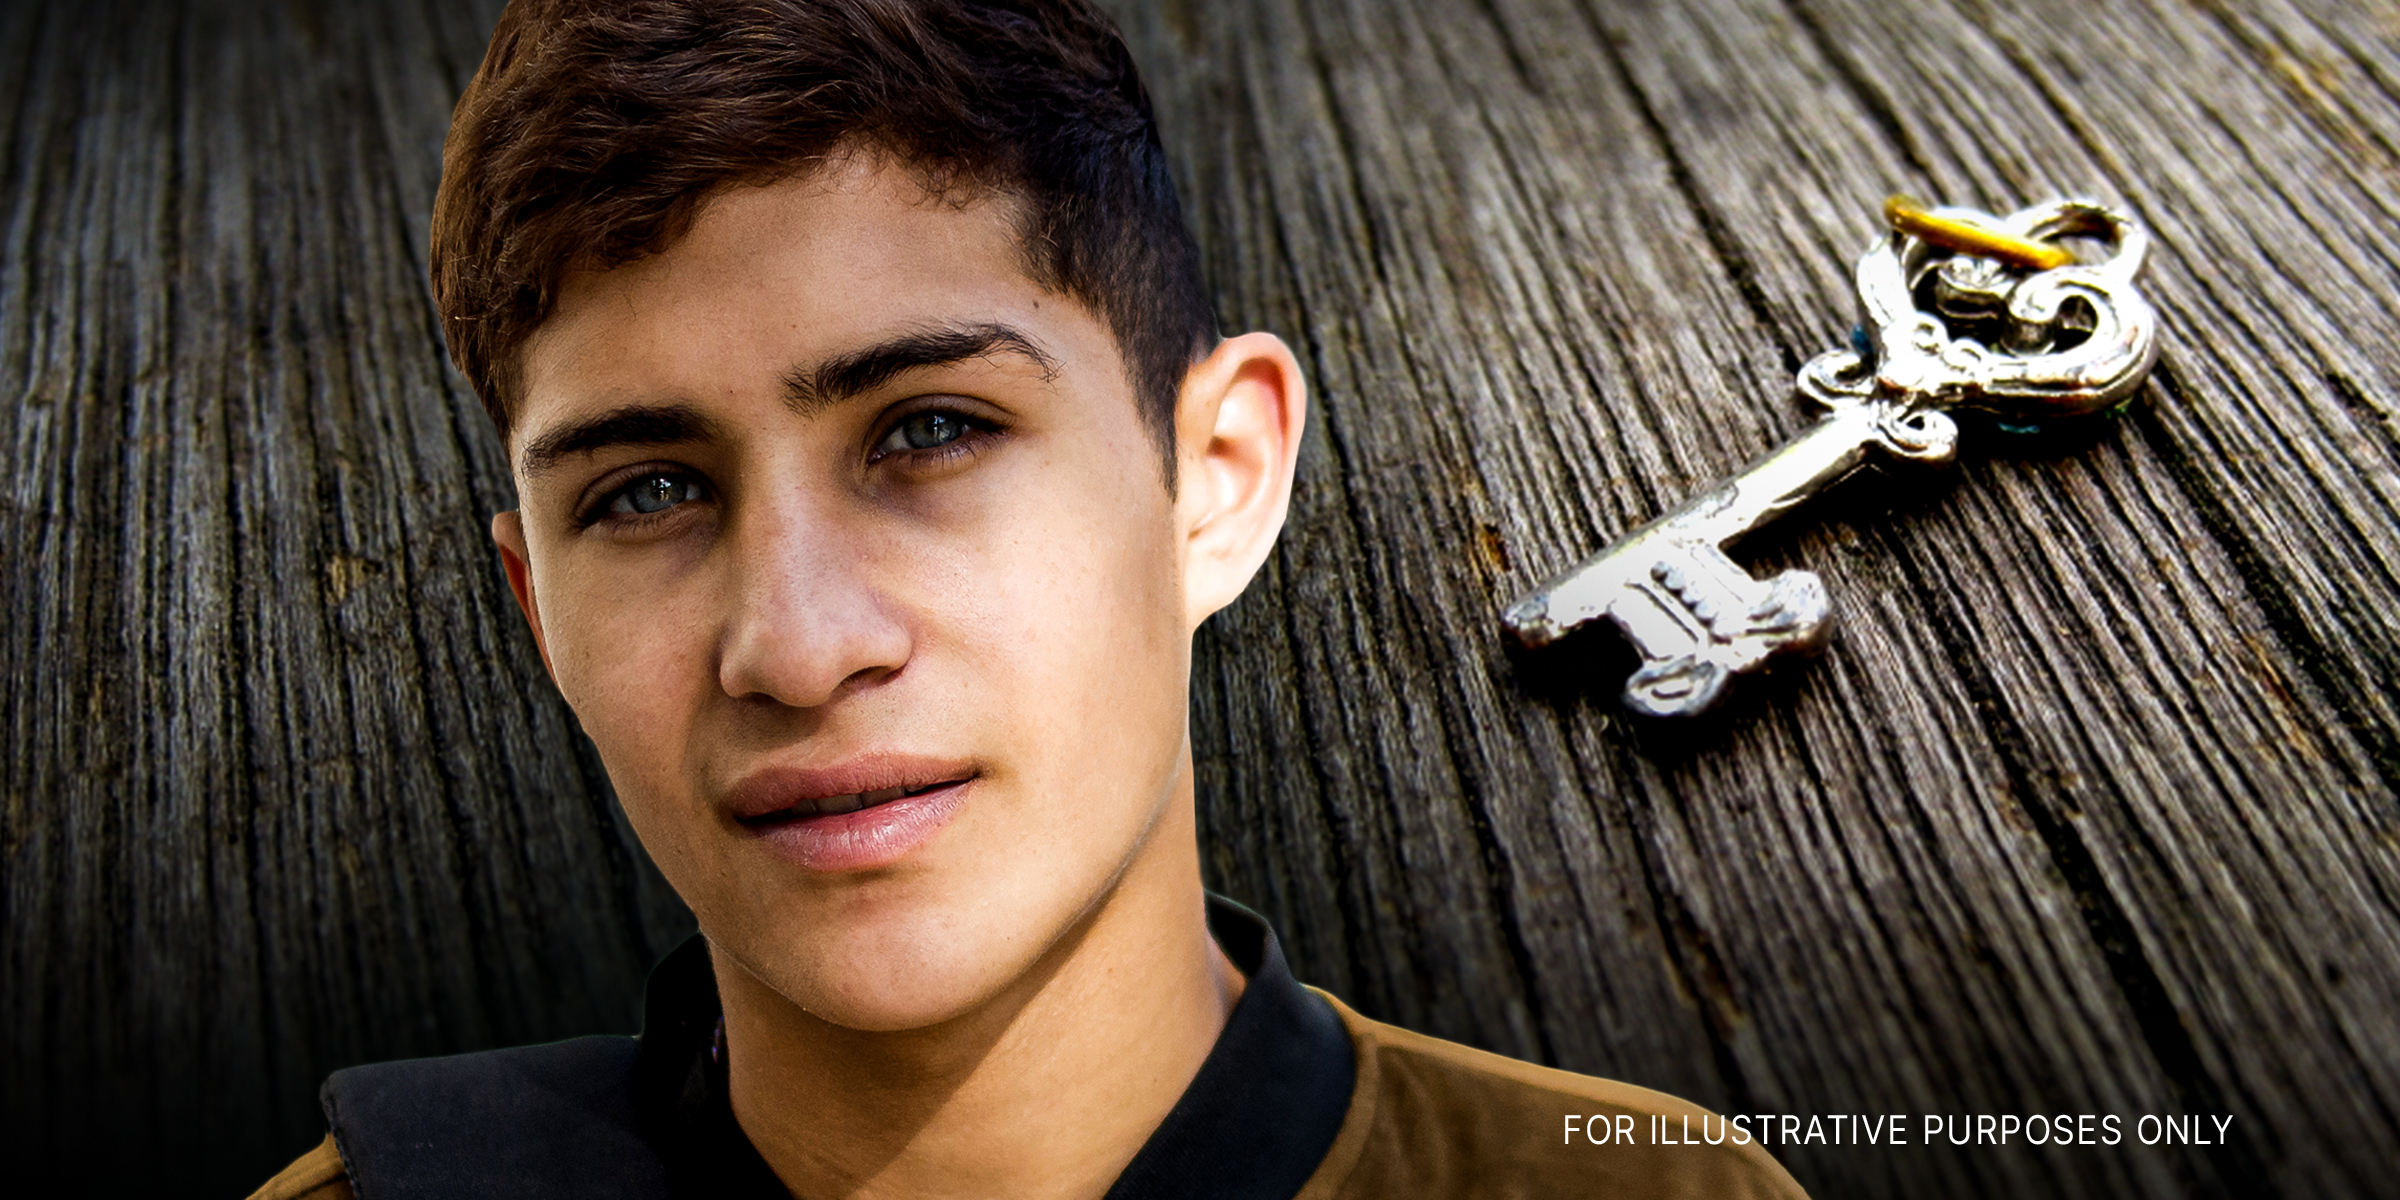 A boy and a key | Source: Flickr.com